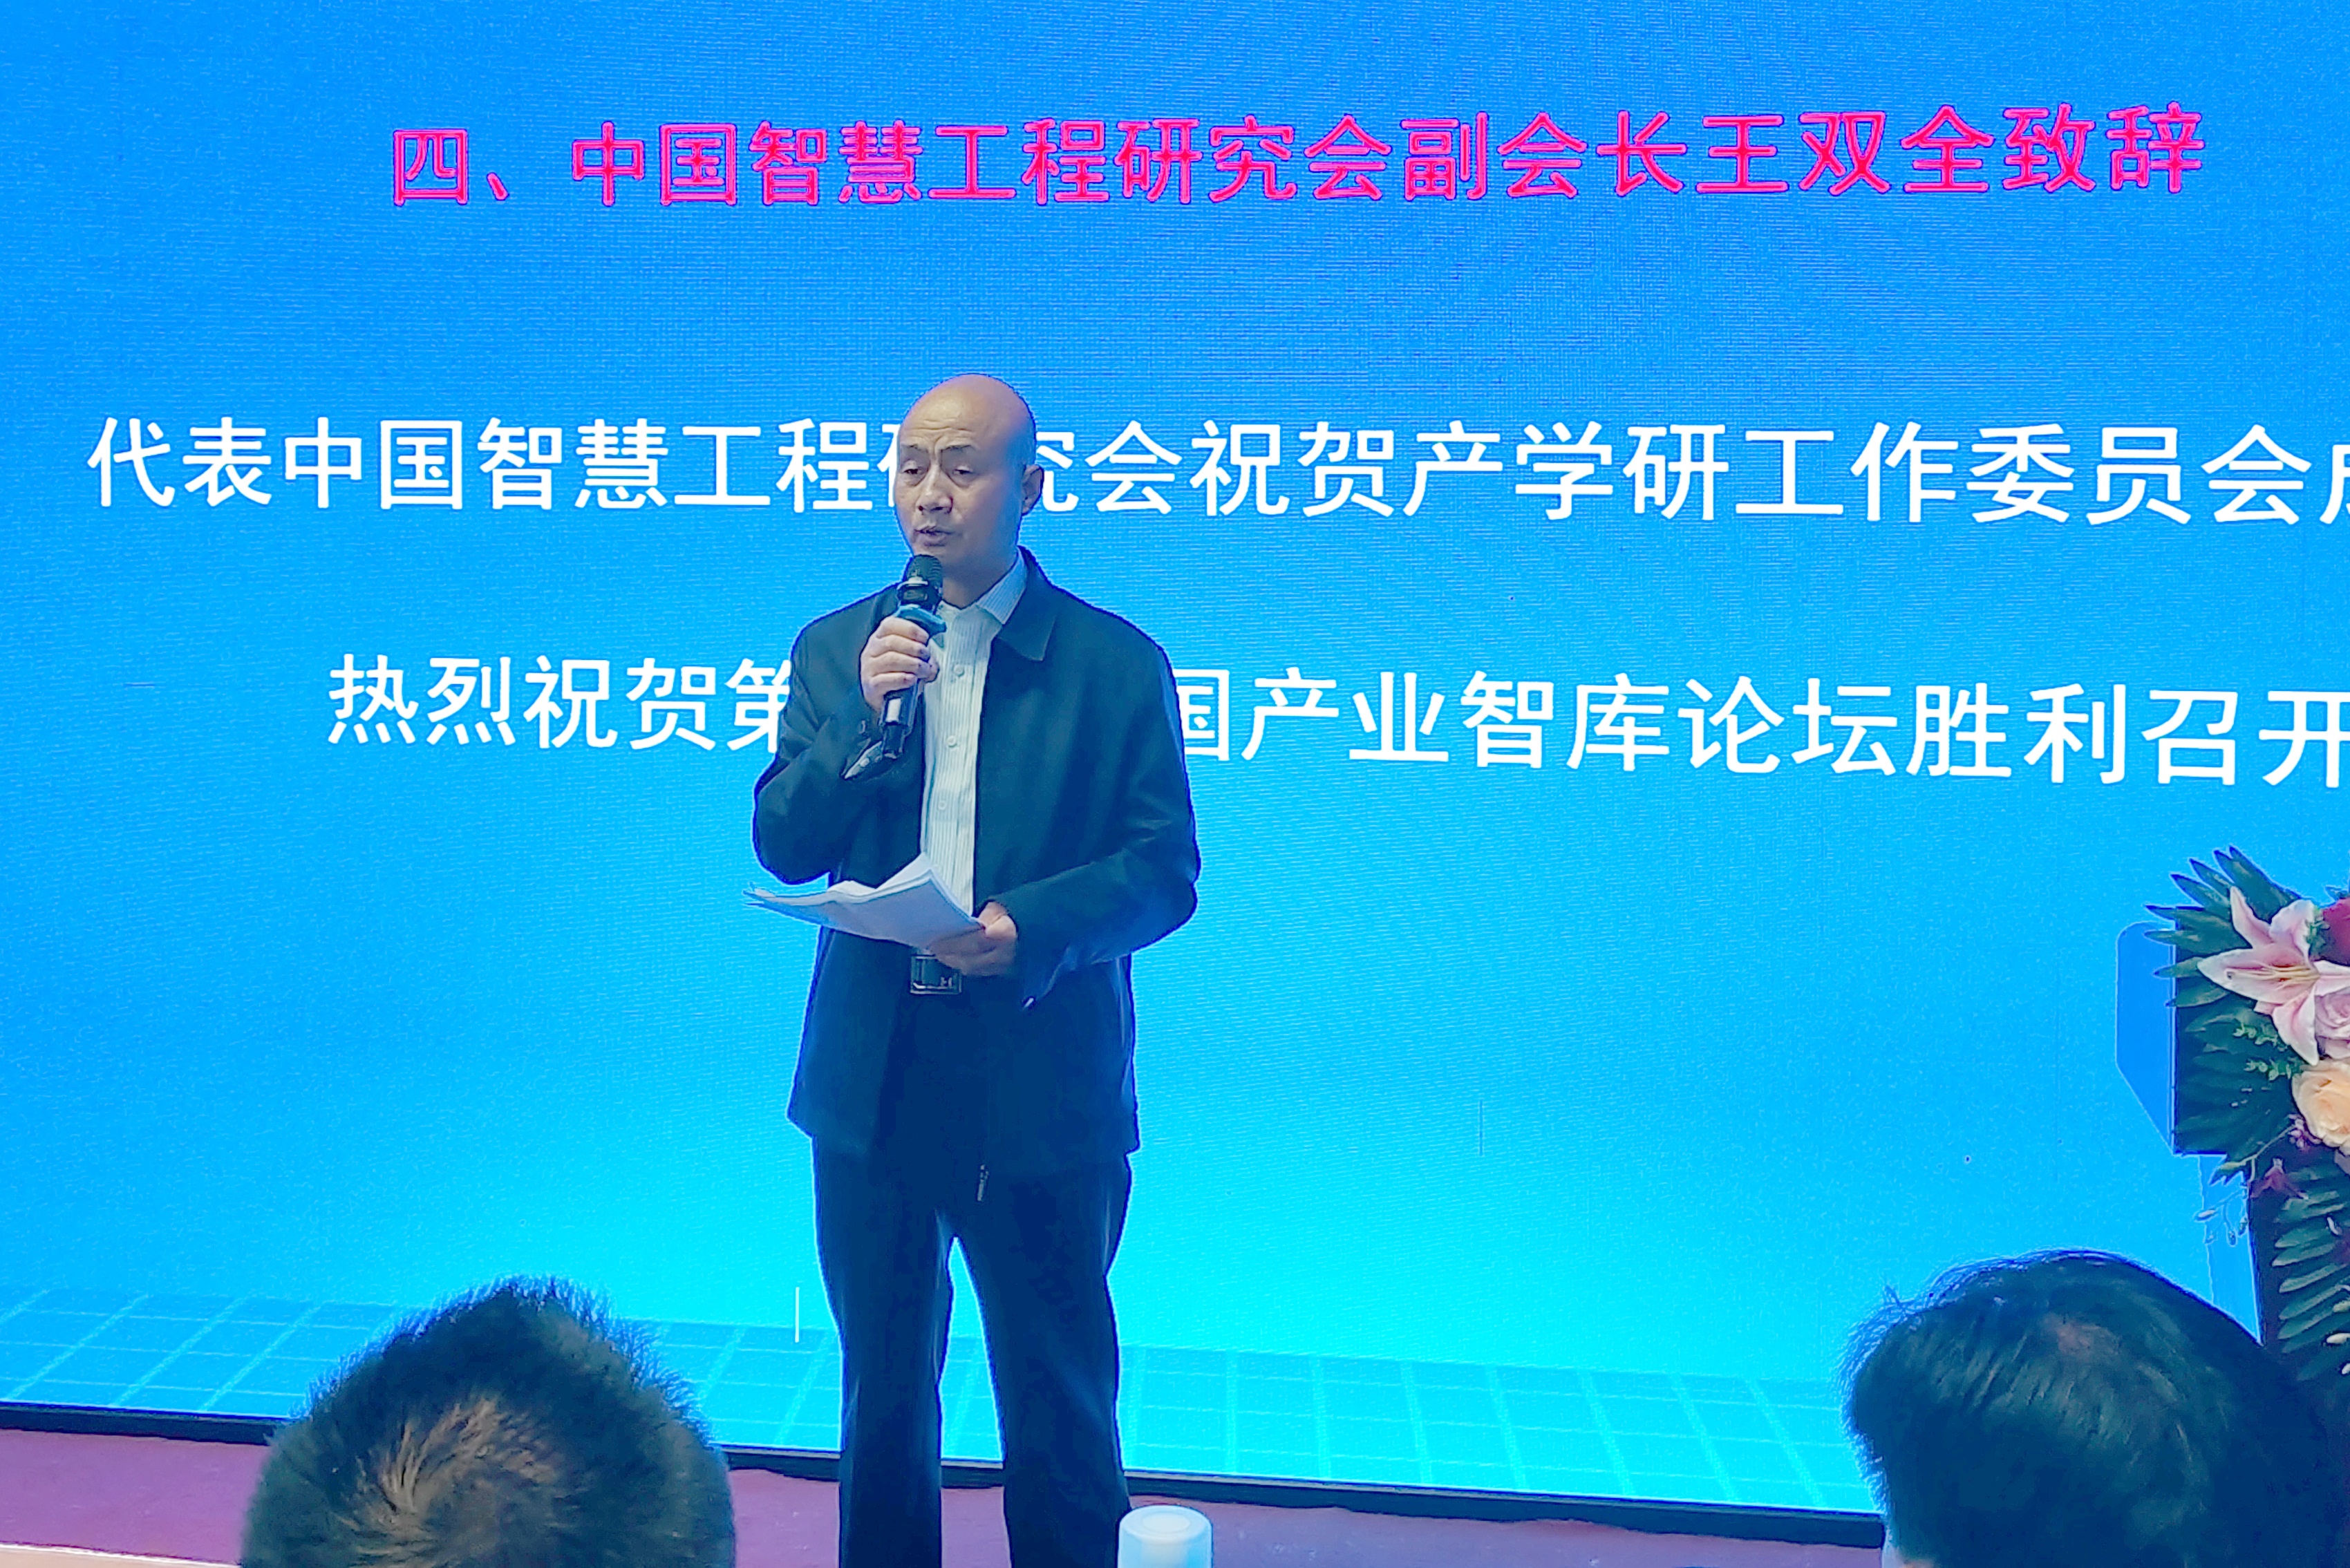 王双全出席中国智慧工程研究会产学研工作委员会成立大会并讲话